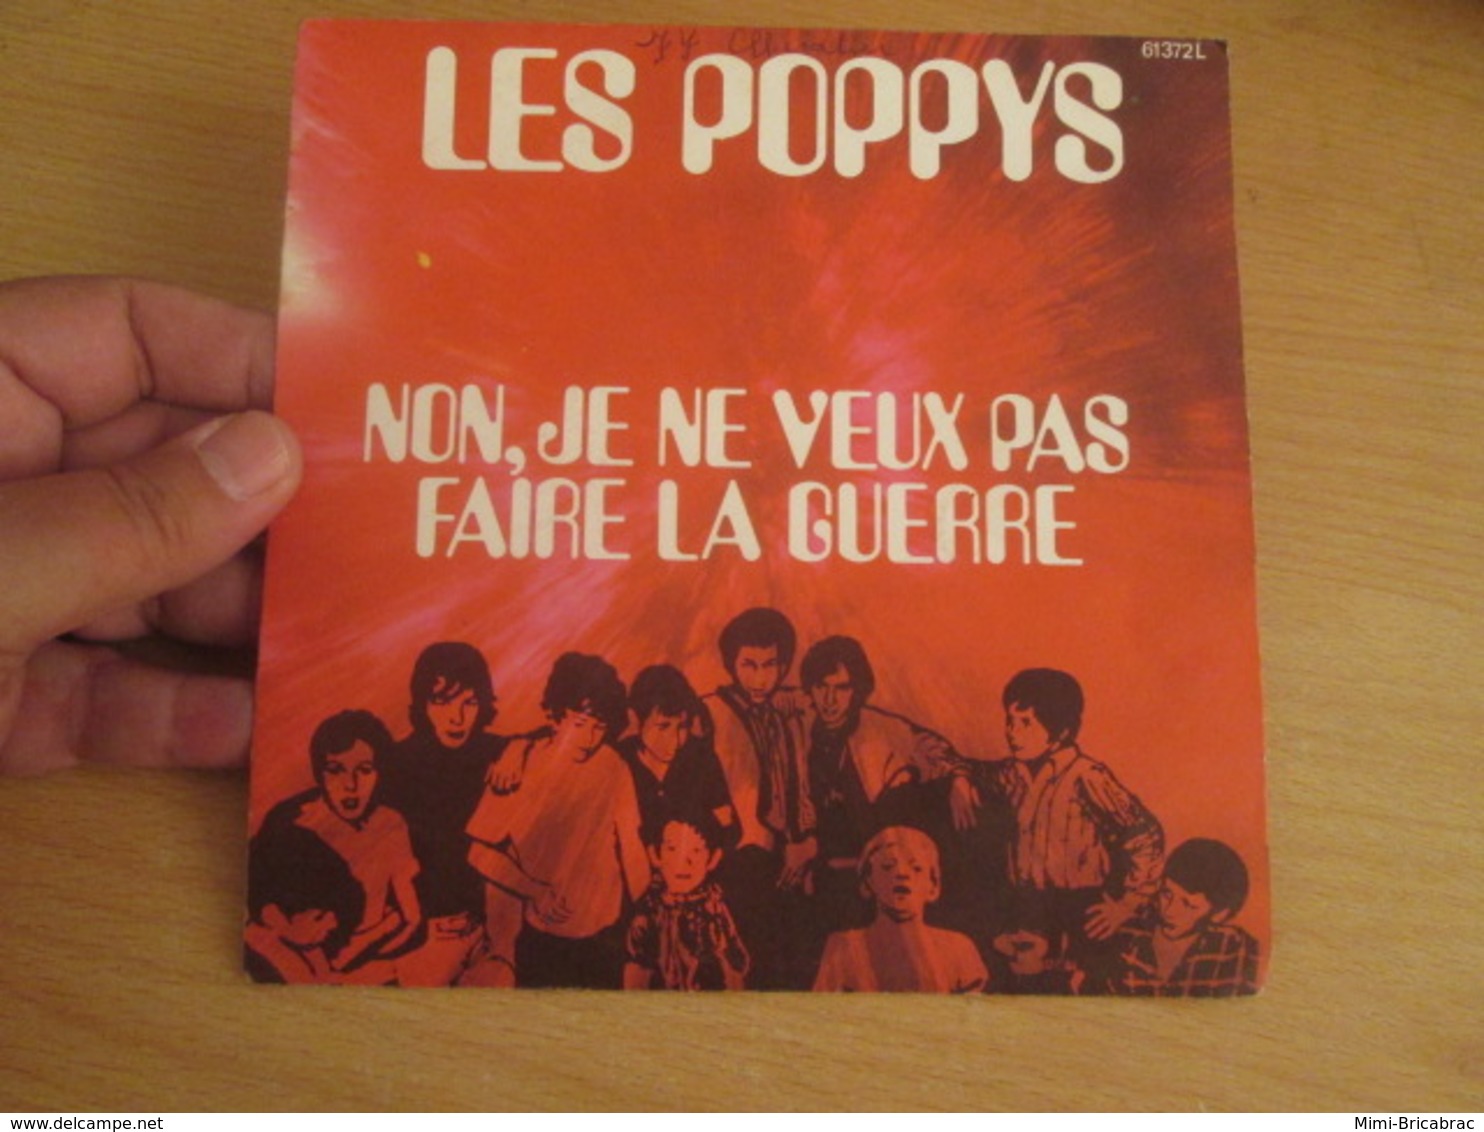 POPPYS Vinyle 45T 7" NOËL 70 - NON JE NE VEUX PAS FAIRE LA GUERRE -BARCLAY 61372 - Musiques Du Monde